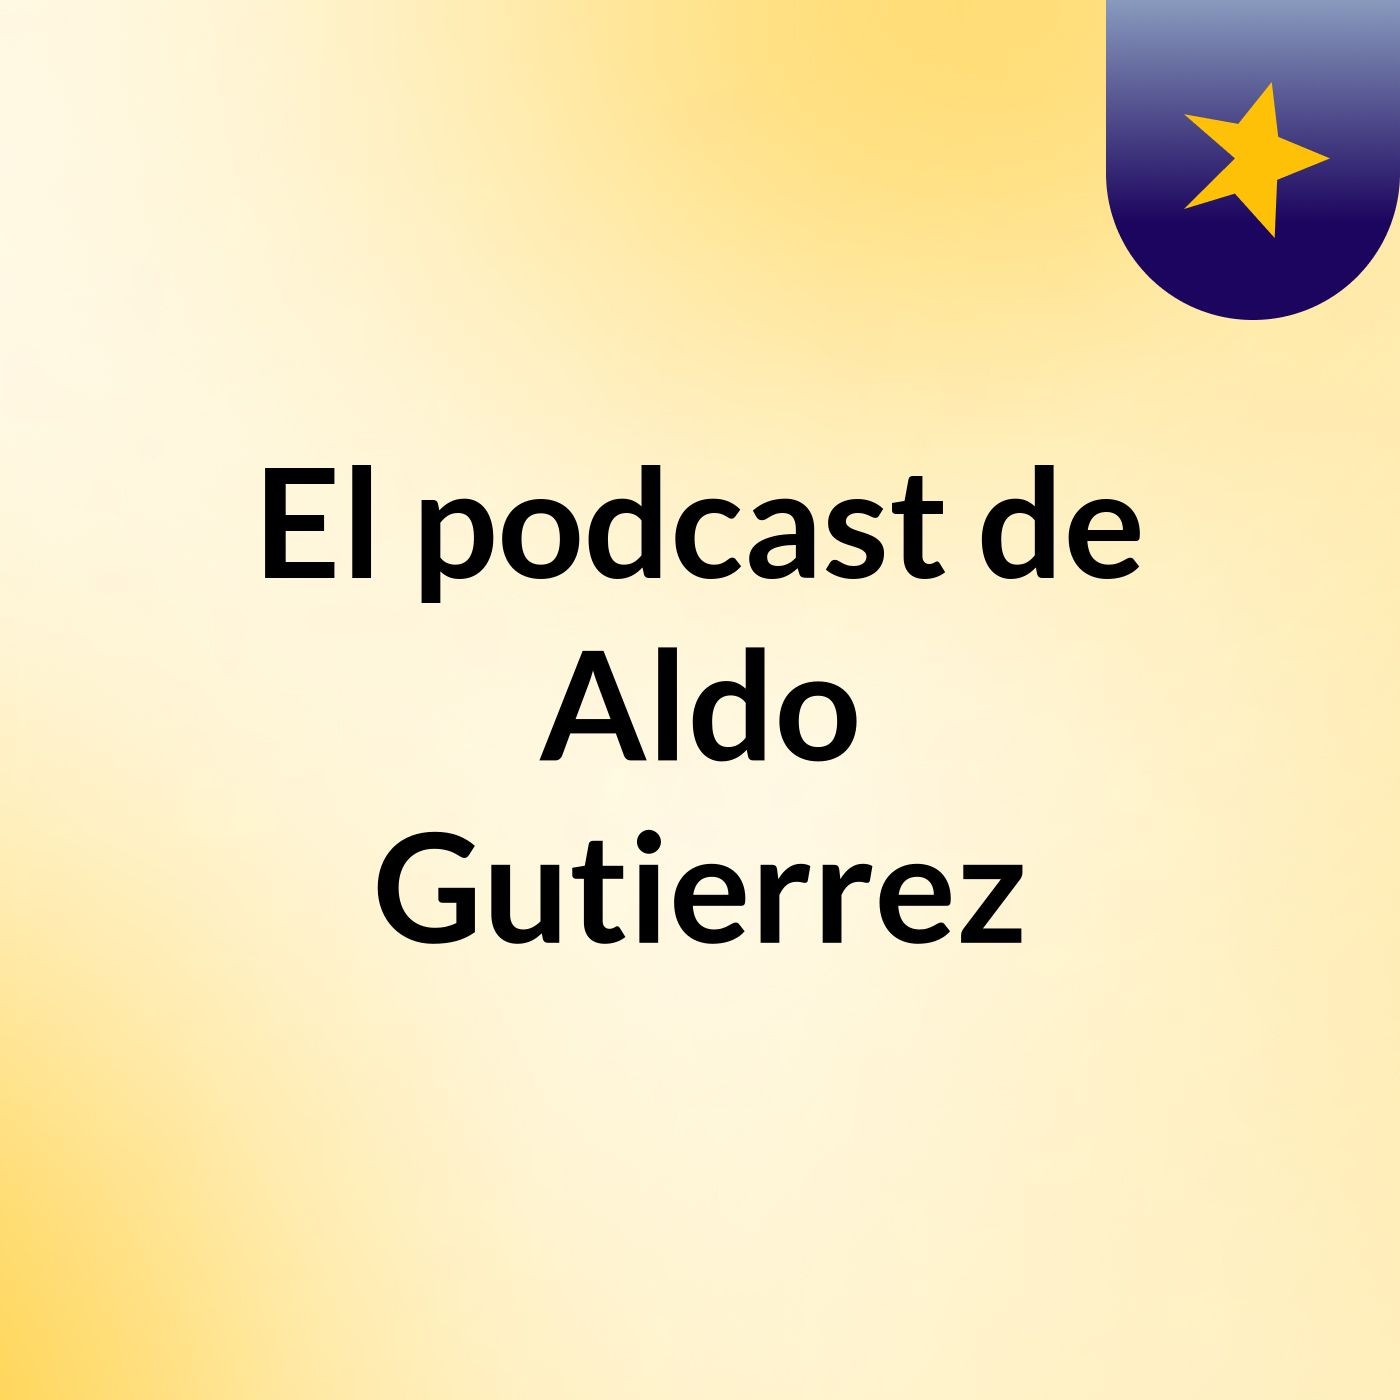 El podcast de Aldo Gutierrez